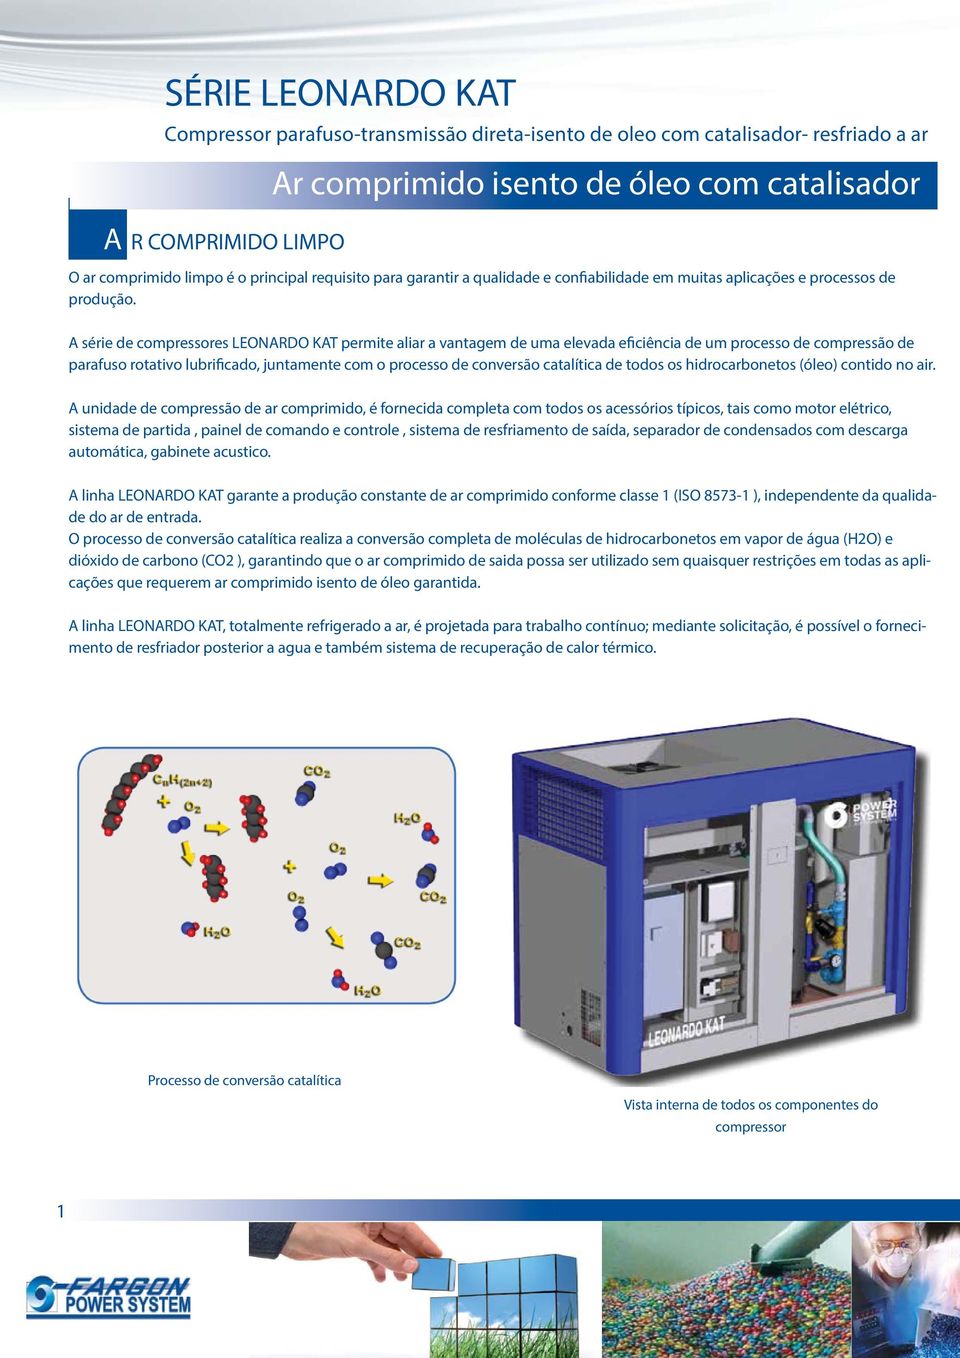 A série de compressores LEONARDO KAT permite aliar a vantagem de uma elevada eficiência de um processo de compressão de parafuso rotativo lubrificado, juntamente com o processo de conversão